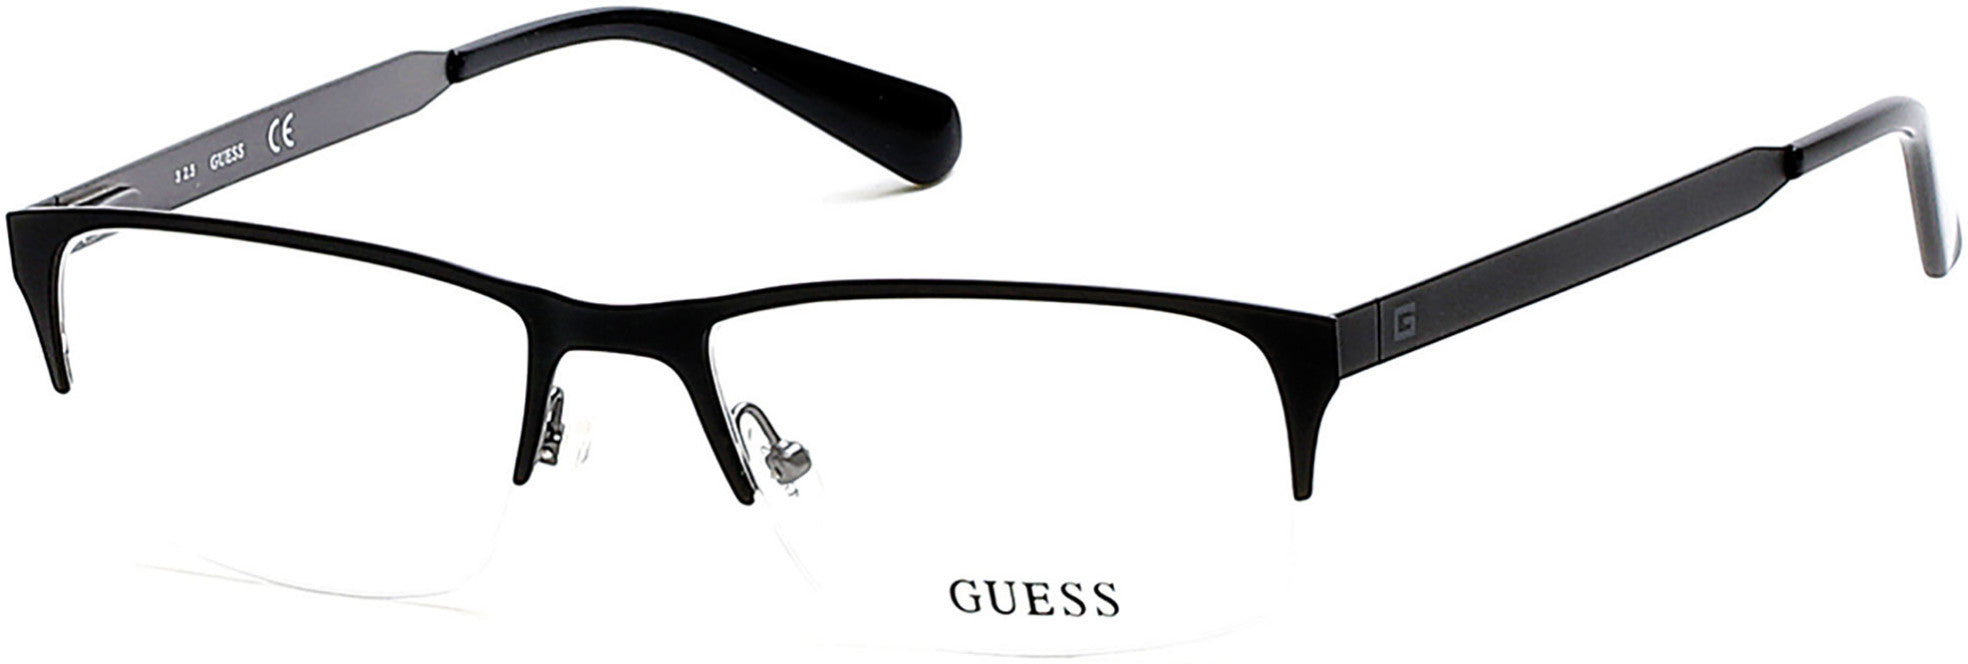 Guess GU1892 Eyeglasses 002-002 - Matte Black